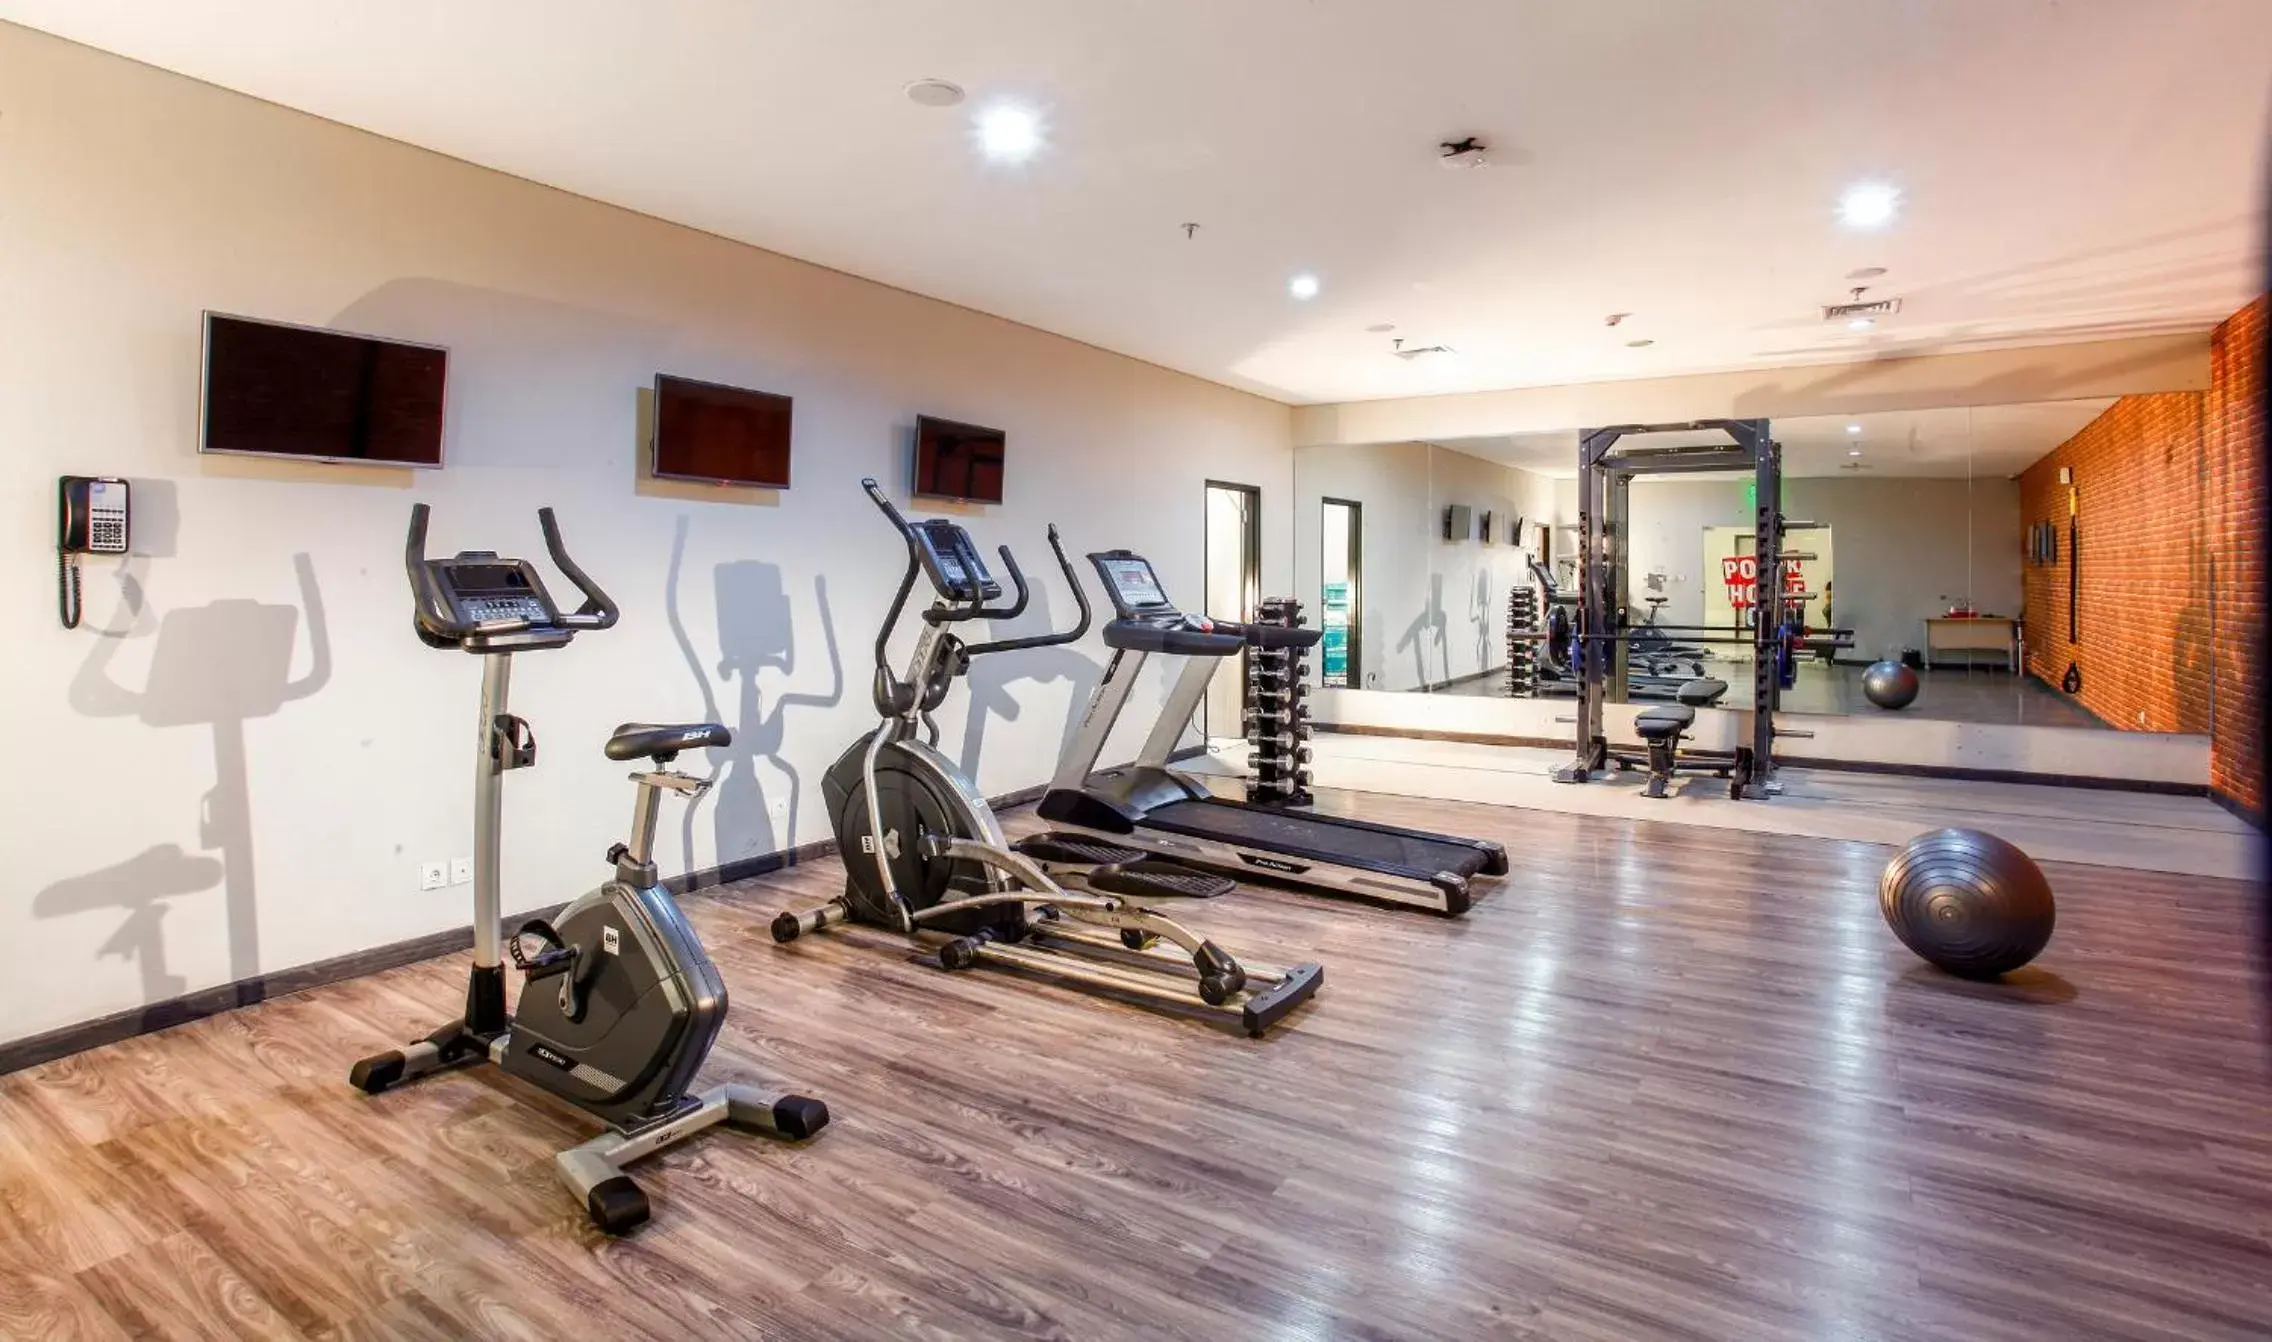 Fitness centre/facilities, Fitness Center/Facilities in Solia Legian Bali